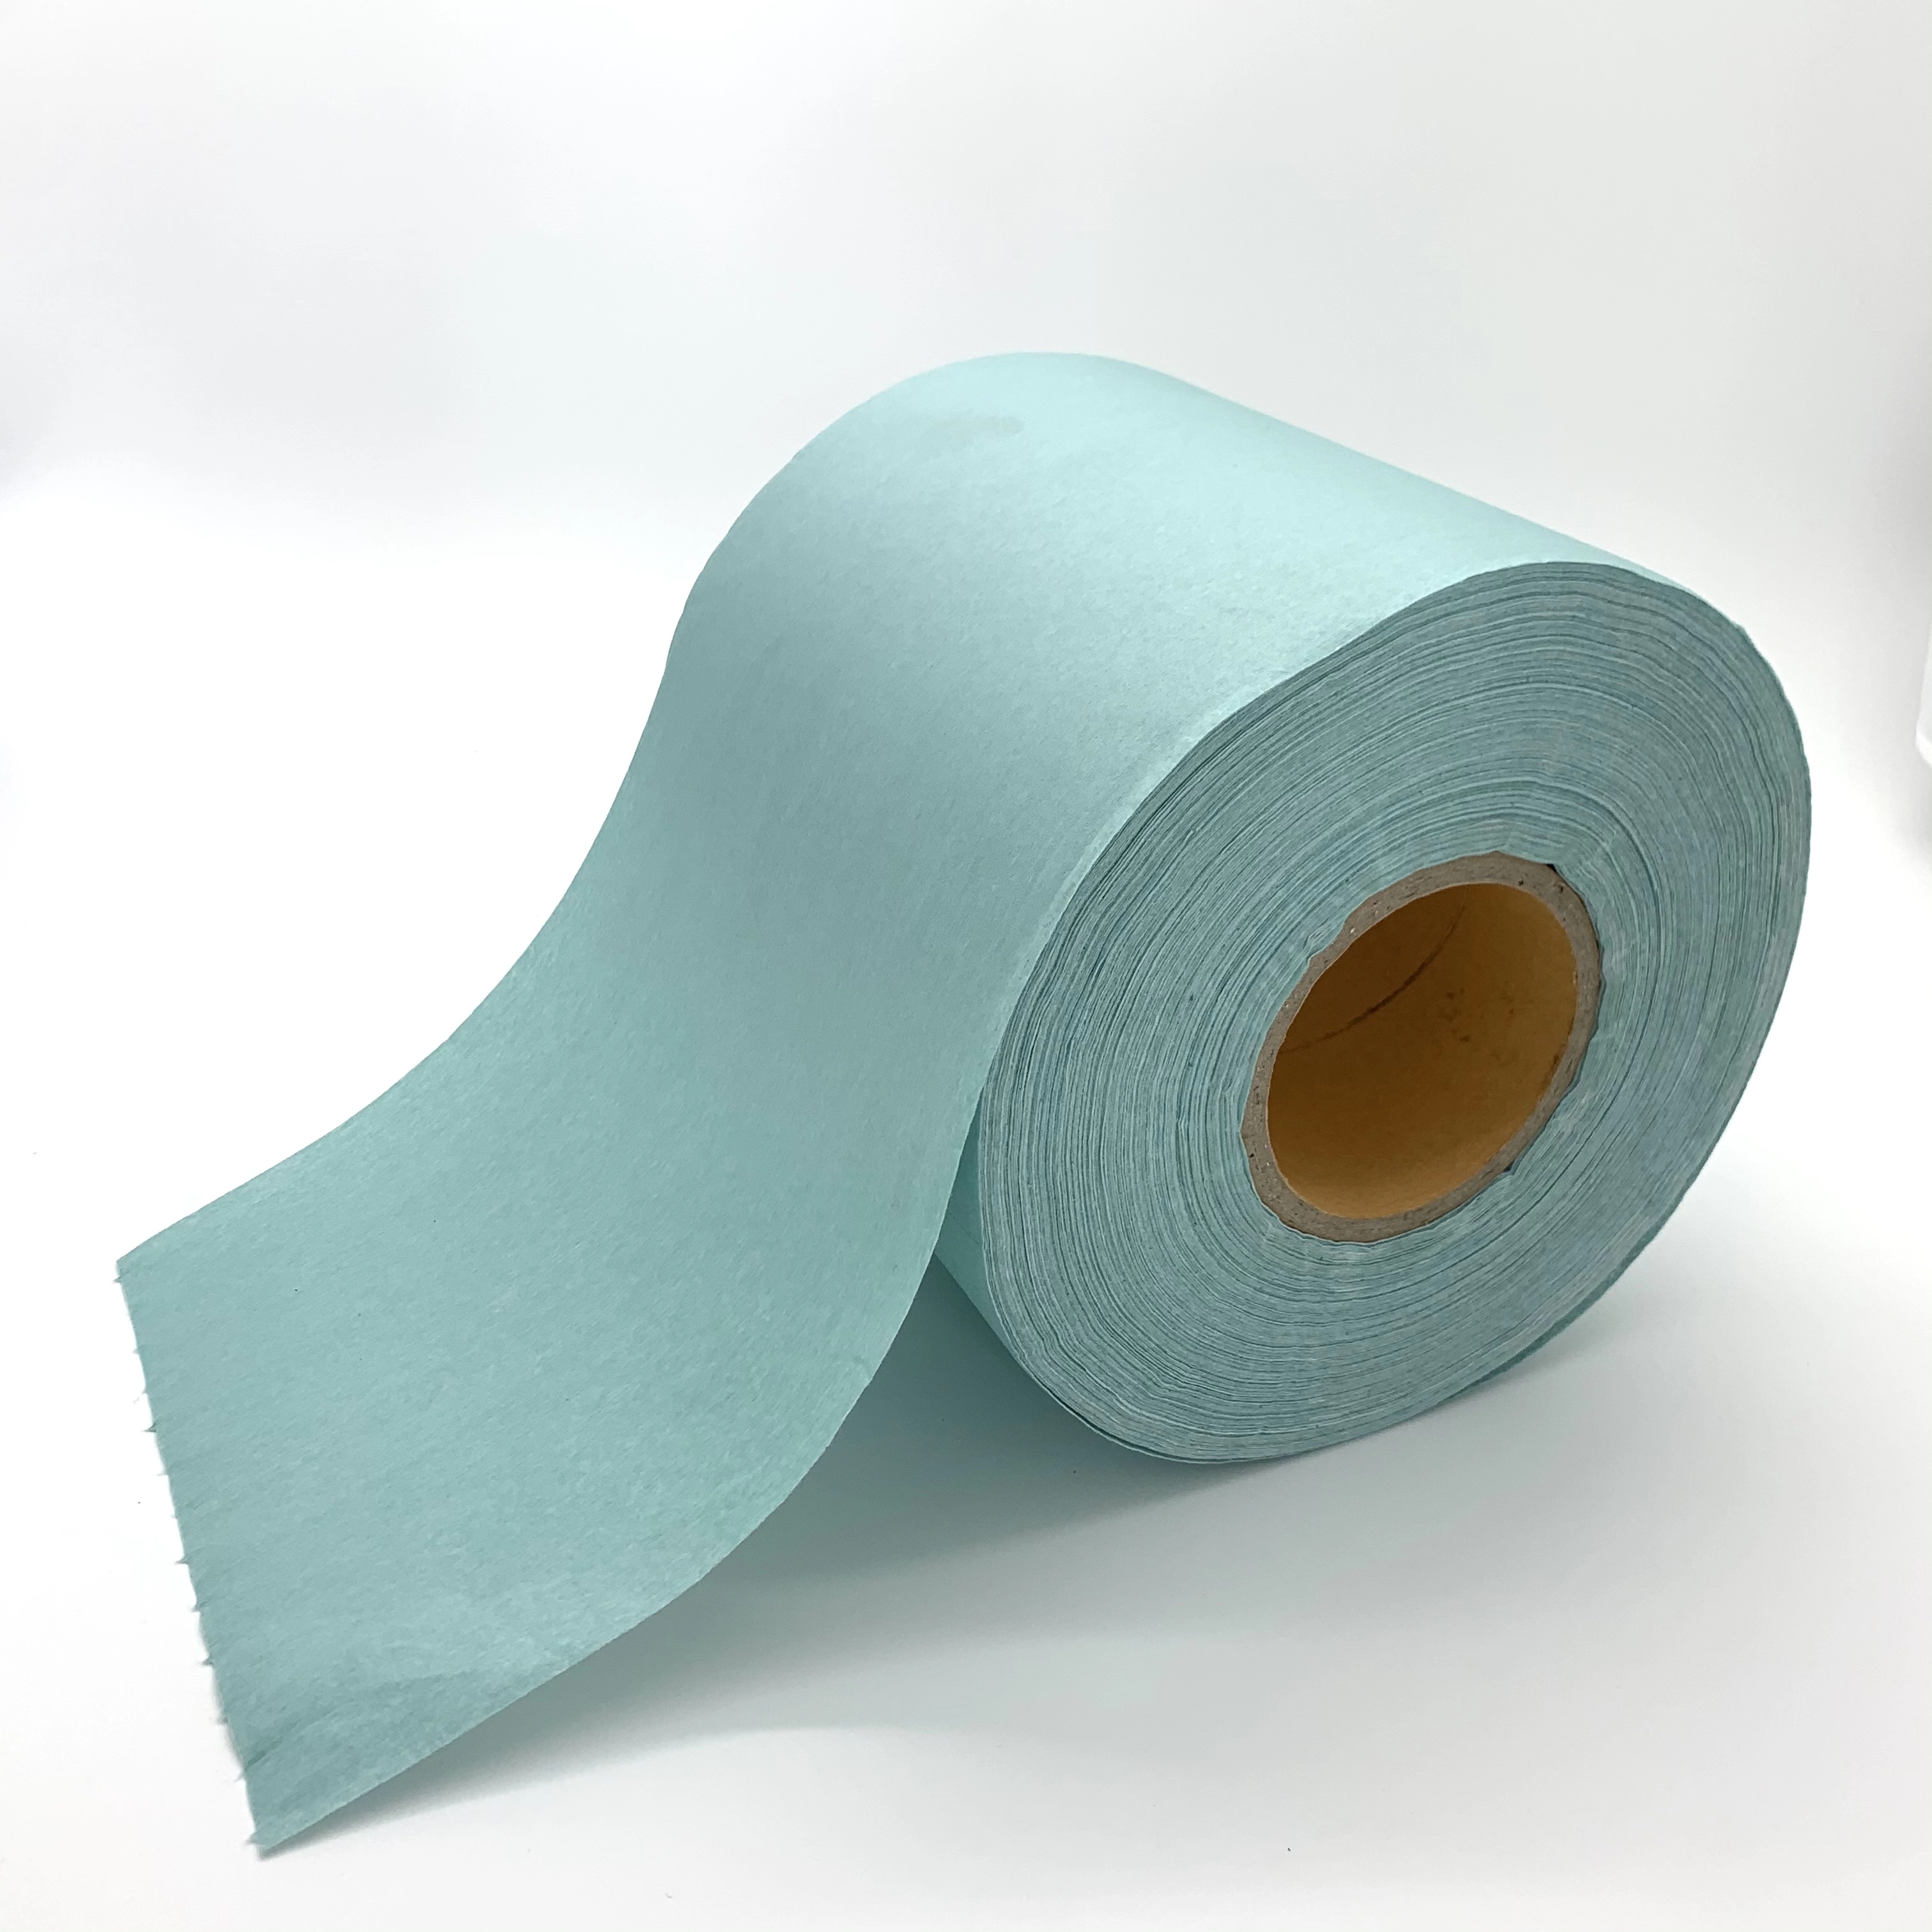 JD-6550 grand rouleau d'essuie-glace pour salle blanche fabricant de rouleaux de papier industriel vente directe pour plusieurs façons d'utiliser